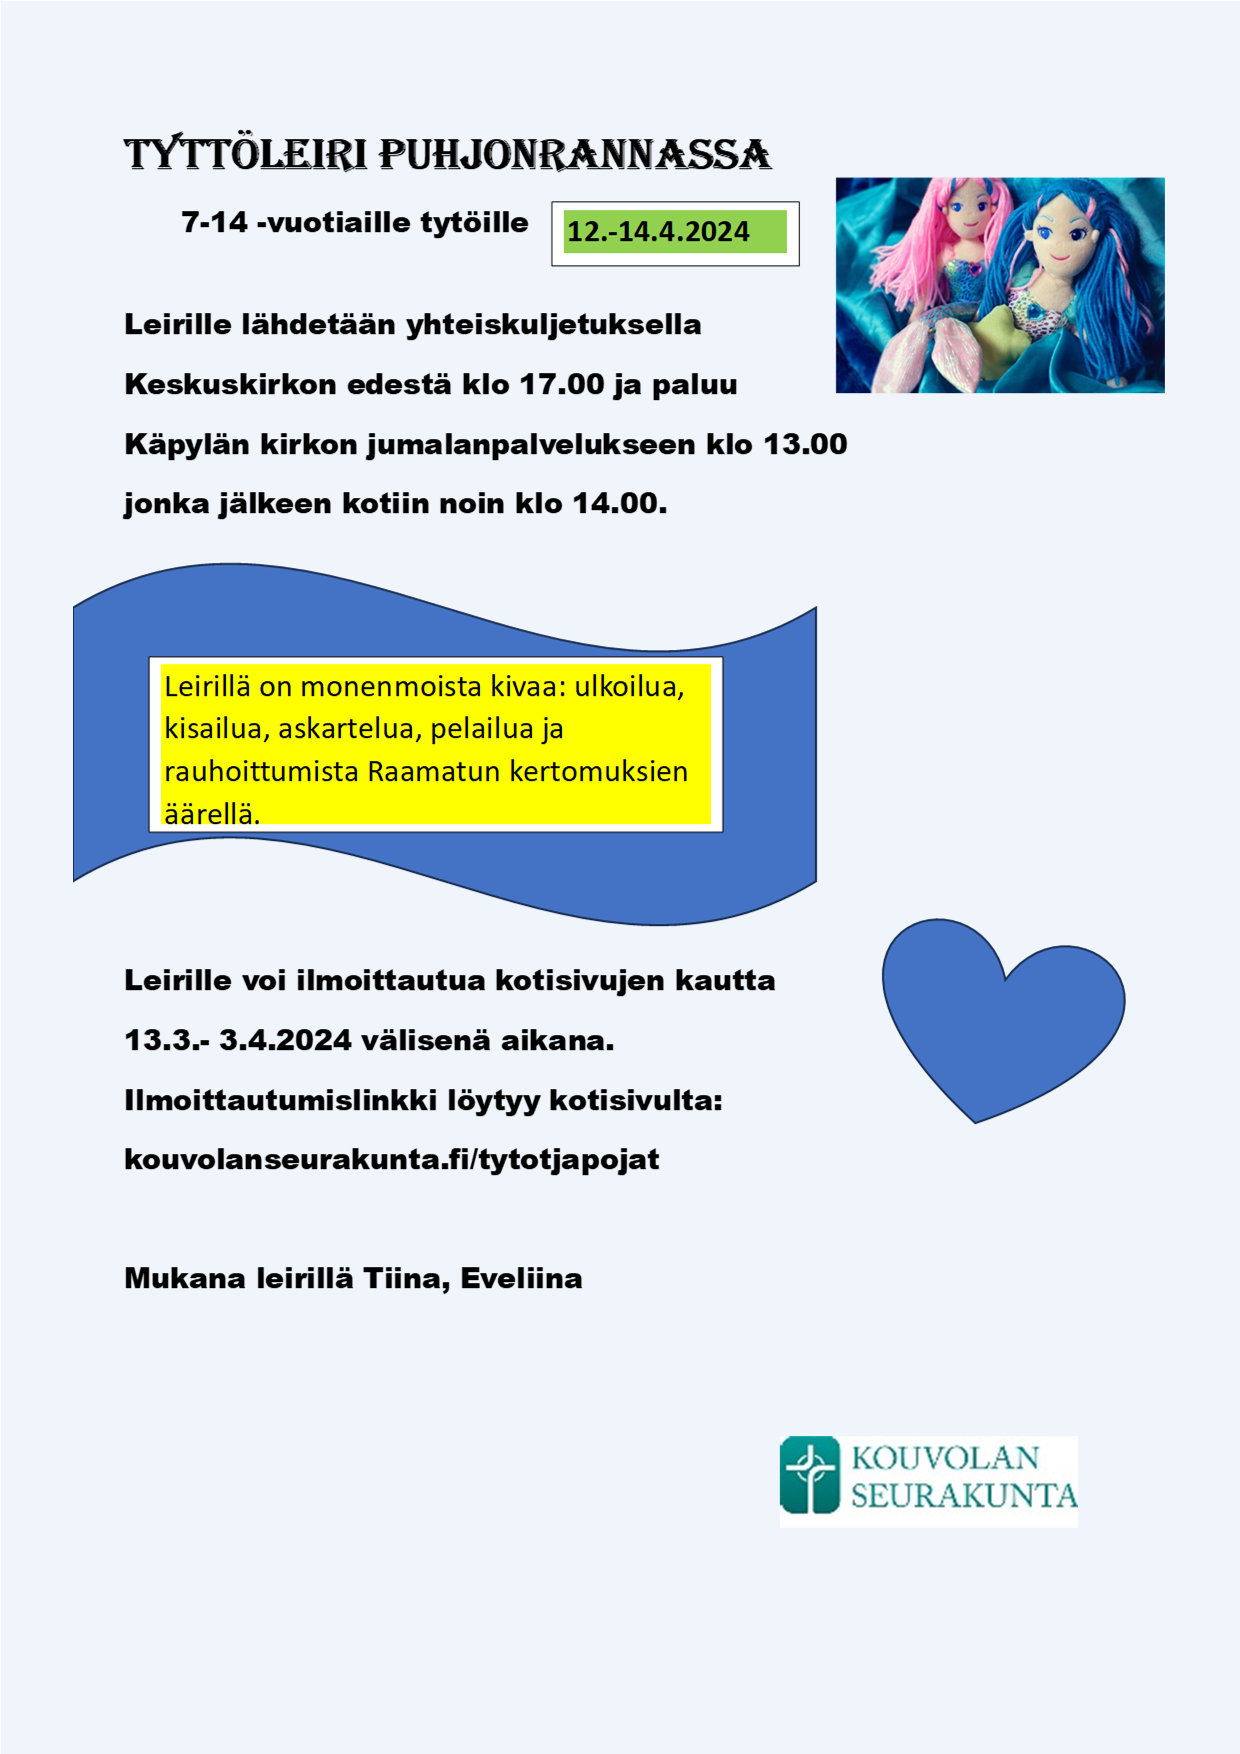 Tyttöleiri Puhjonrannassa 7-14 vuotiaille tytöille, 12.-14.4.2024